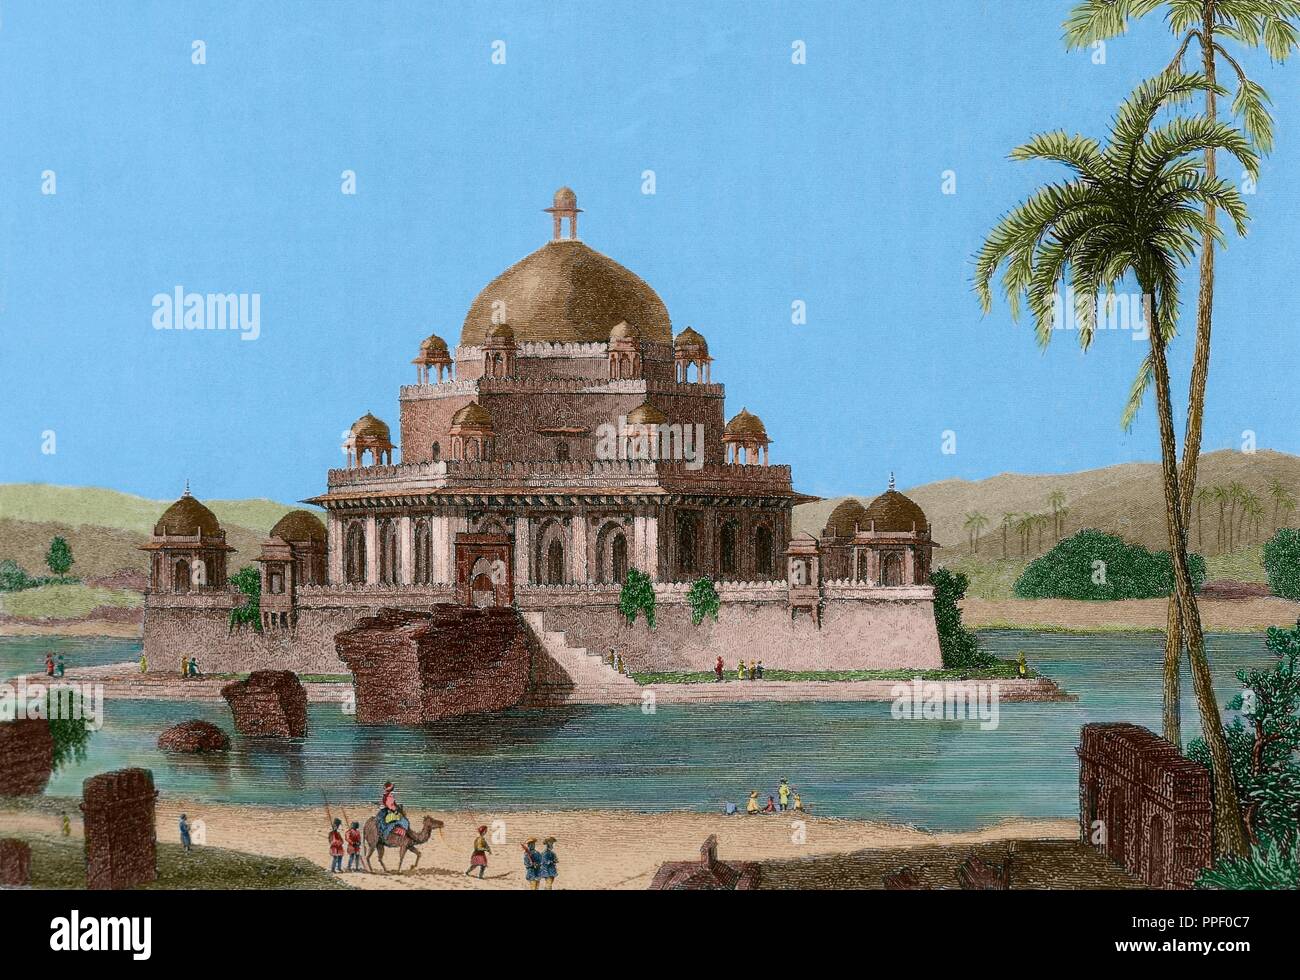 Sher Shah Suri (Sasaram, 1486-1545). Emperador que fundó el imperio suri en el norte de la India, también conocido como Sher Khan. Estableció Delhi como la capital del imperio. Tumba de Sher Shah Suri. Mausoleo en la ciudad de Sasaram, en el estado de Bihar, construido en su memoria. Fué diseñado por el arquitecto Aliwal Khari y construido entre 1540 y 1545, durante el reinado del hijo del emperador, Islam Shah (1545-1554). Grabado. Panorama Universal-India, 1845. Coloreado. Stock Photo